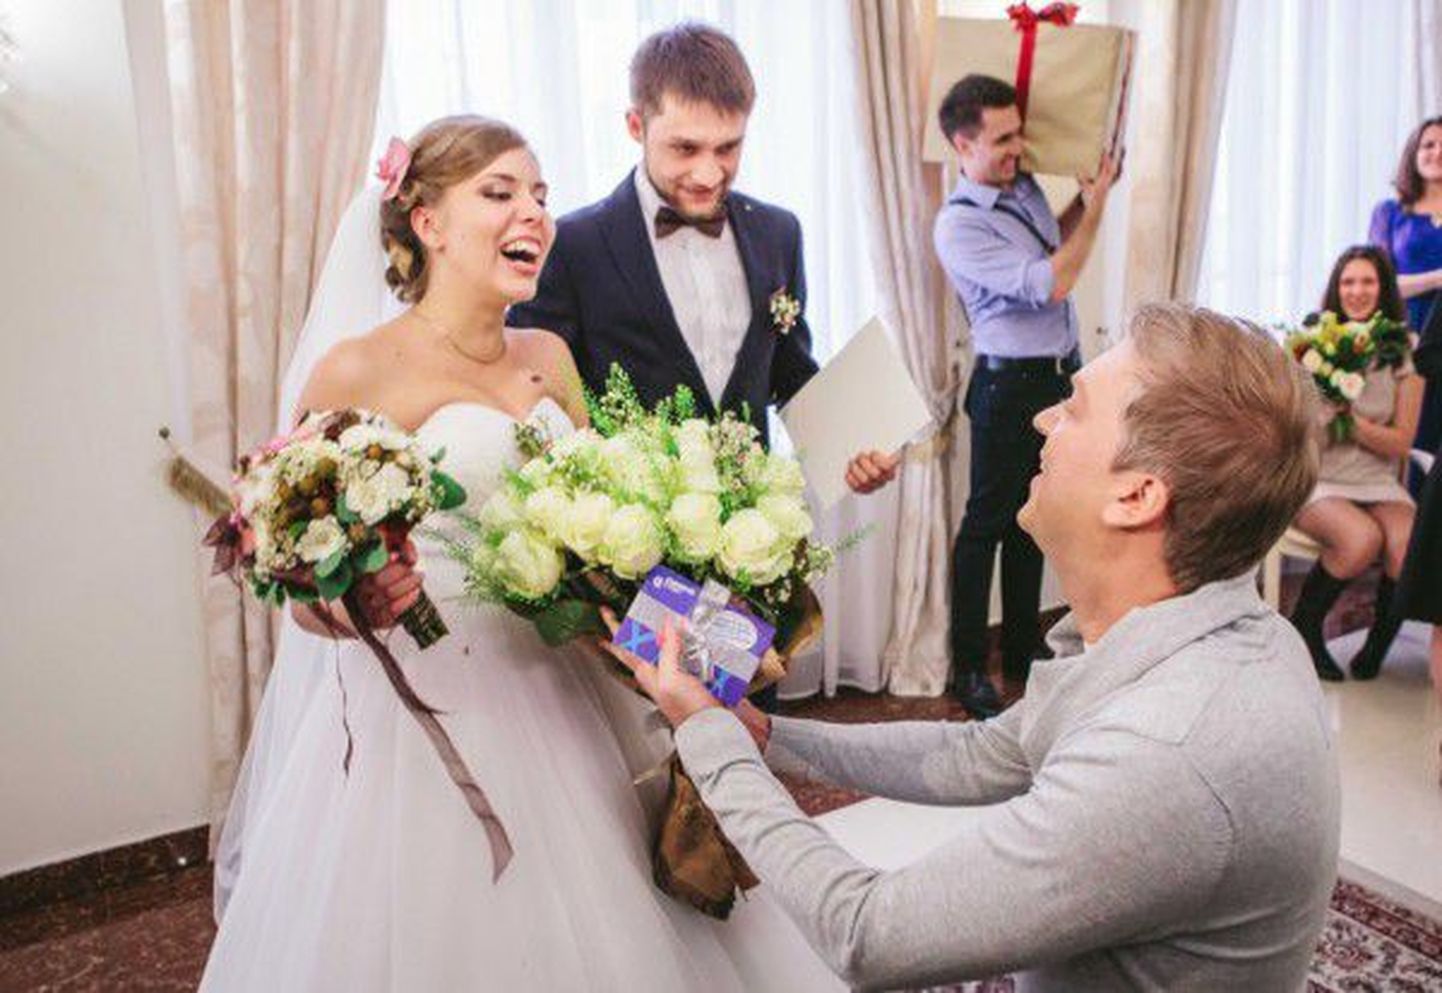 Сергей Светлаков посетил свадьбу поклонников.